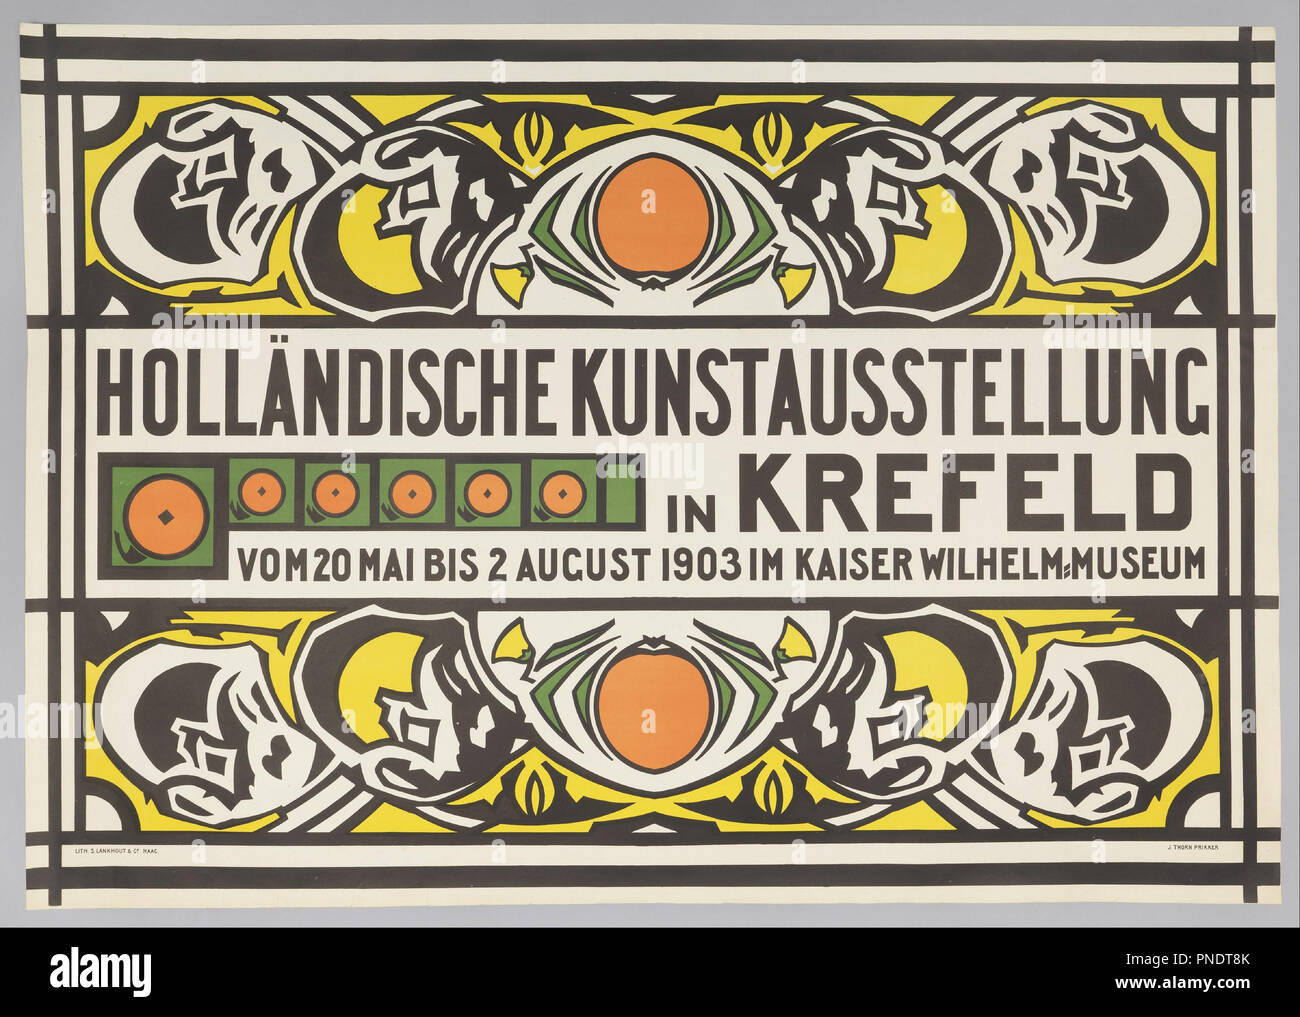 Holländische Kunstausstellung (Exposition d'art néerlandais à Krefeld). Date/période : 1903. De l'affiche. Lithographie sur papier vélin blanc. Auteur : Jan Thorn Prikker. Banque D'Images